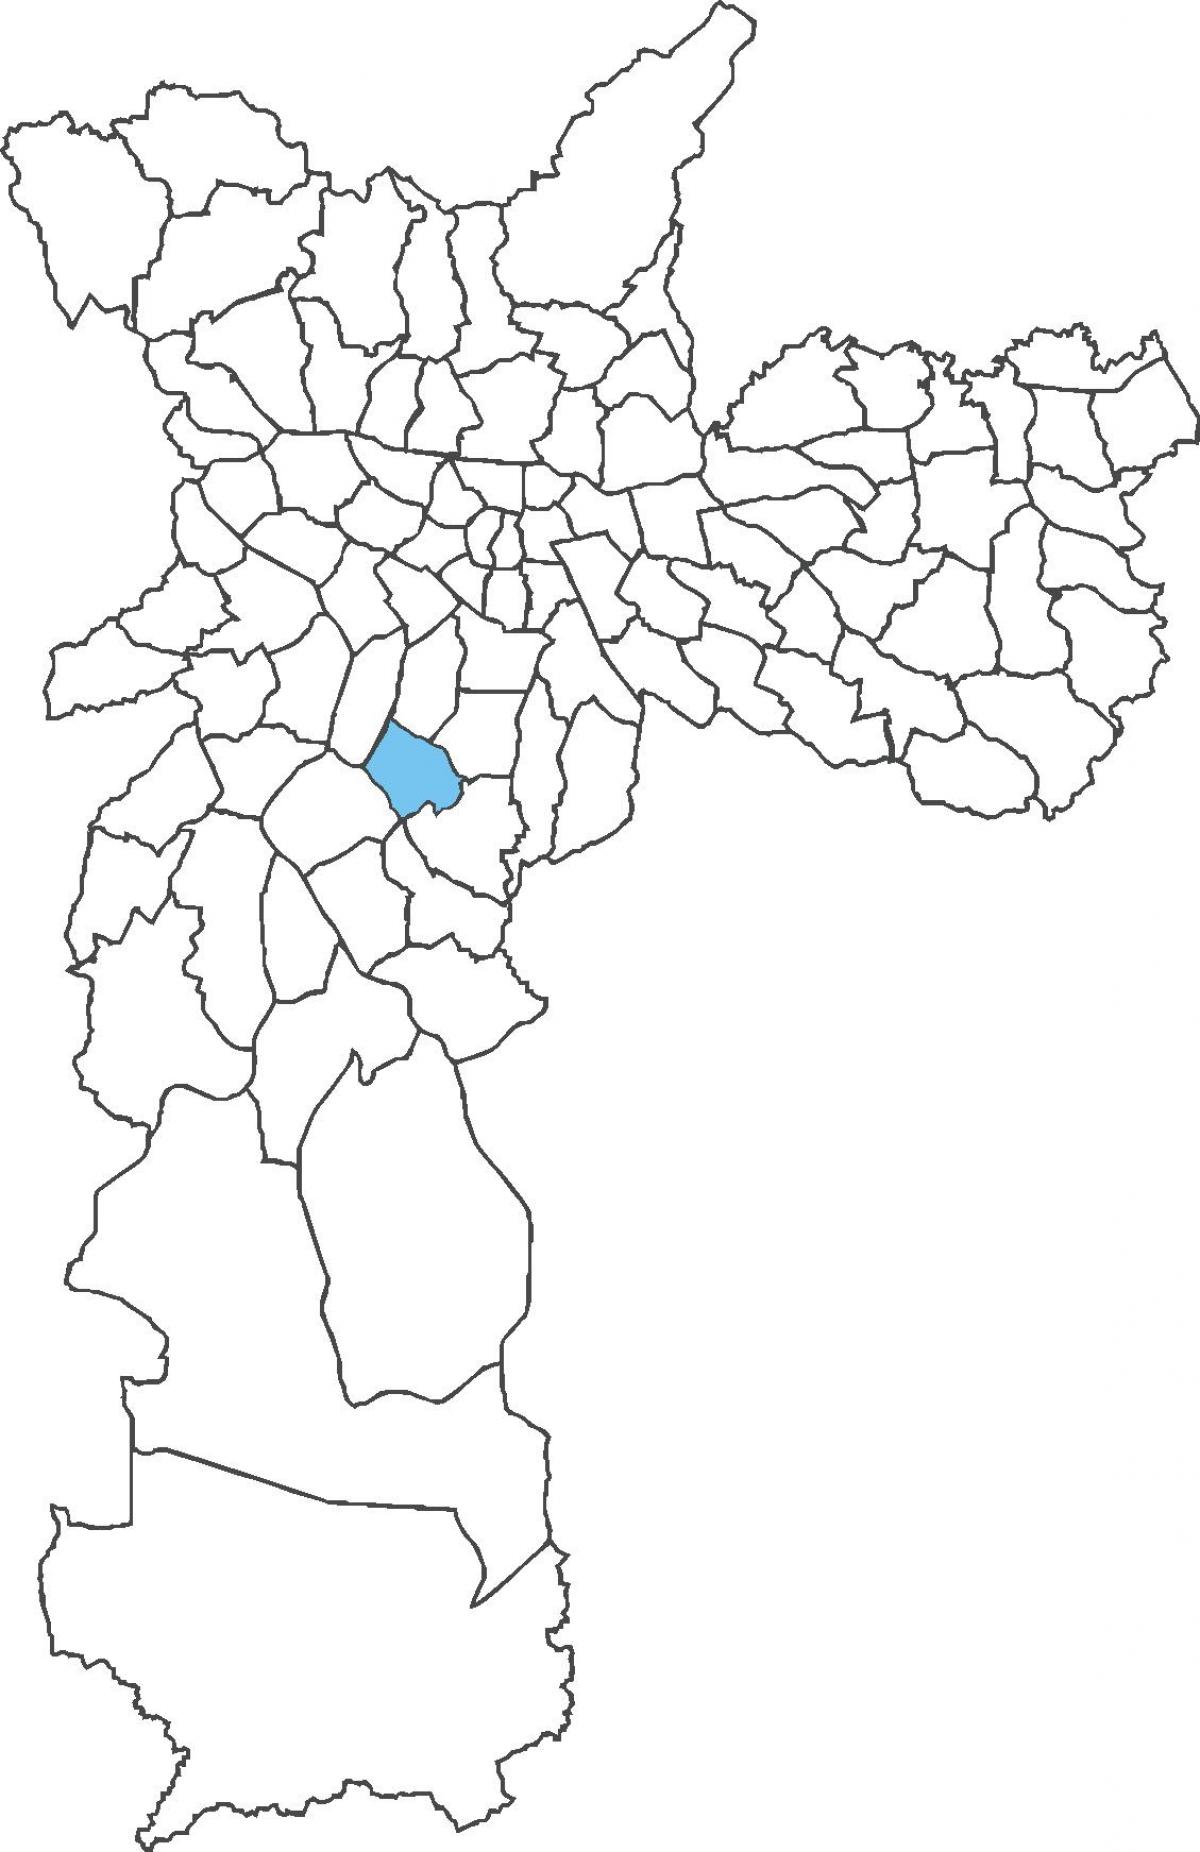 地図Campoベロオ地区